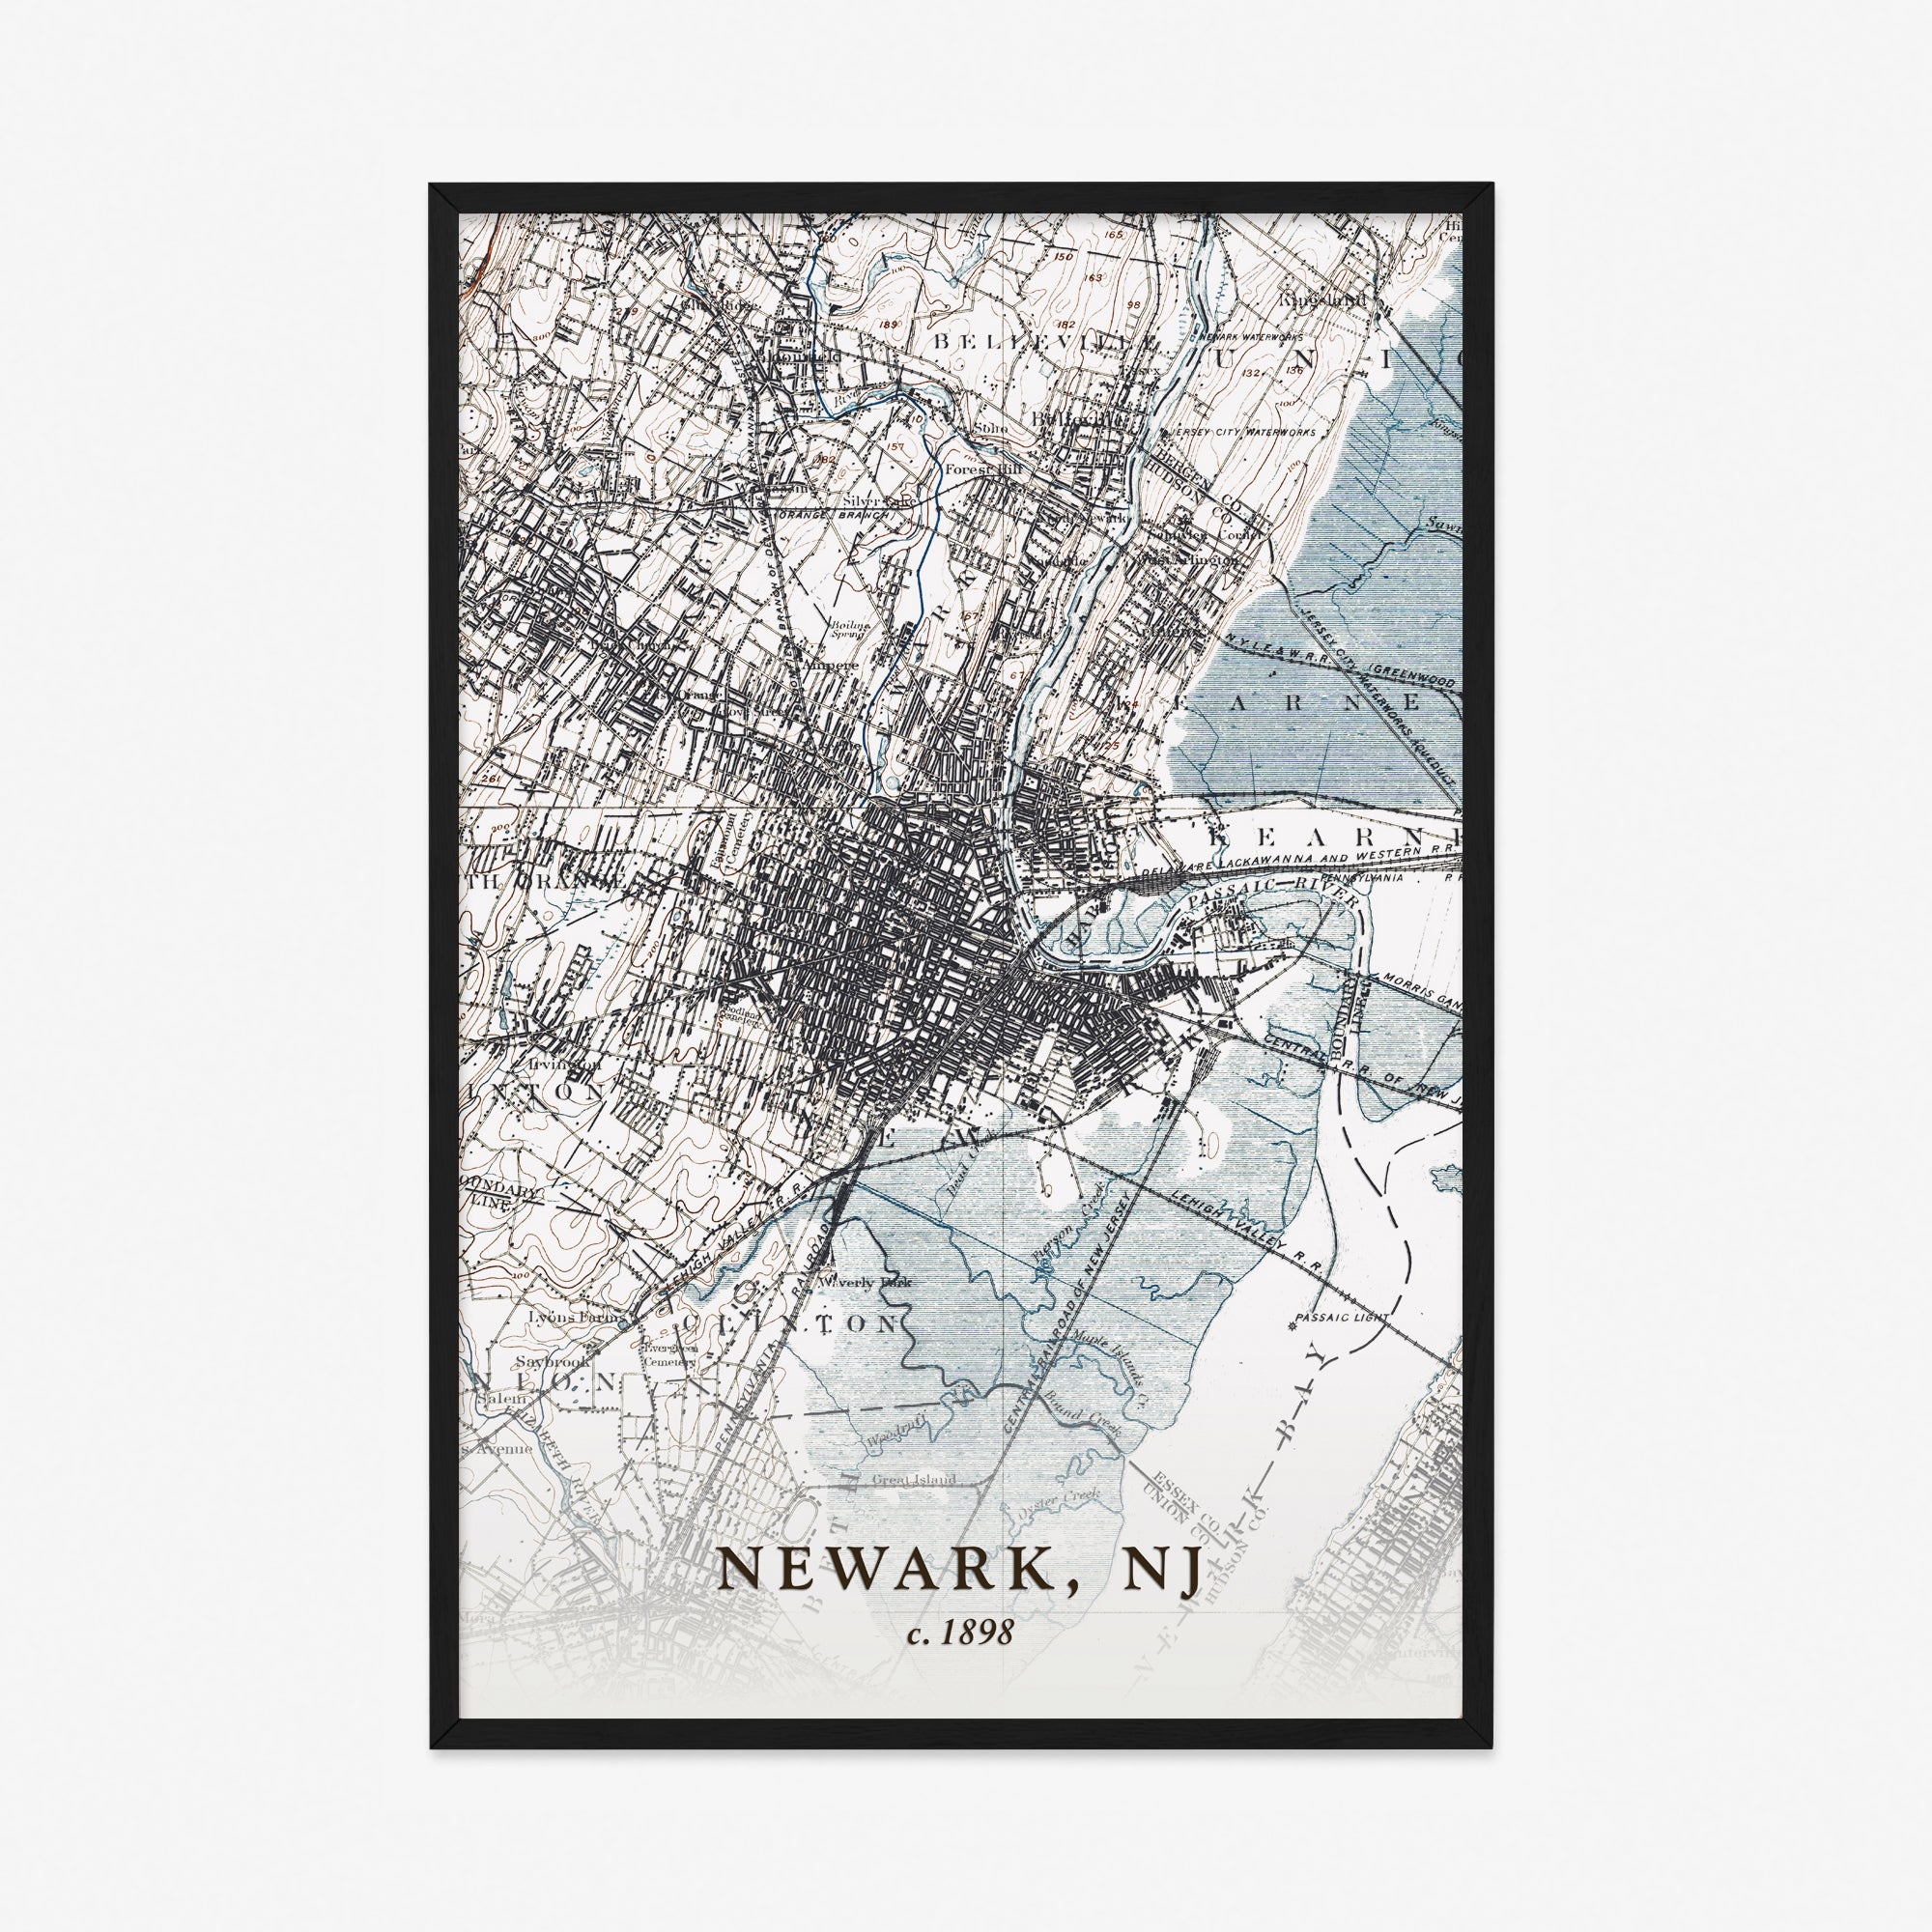 Newark, NJ - 1898 Topographic Map